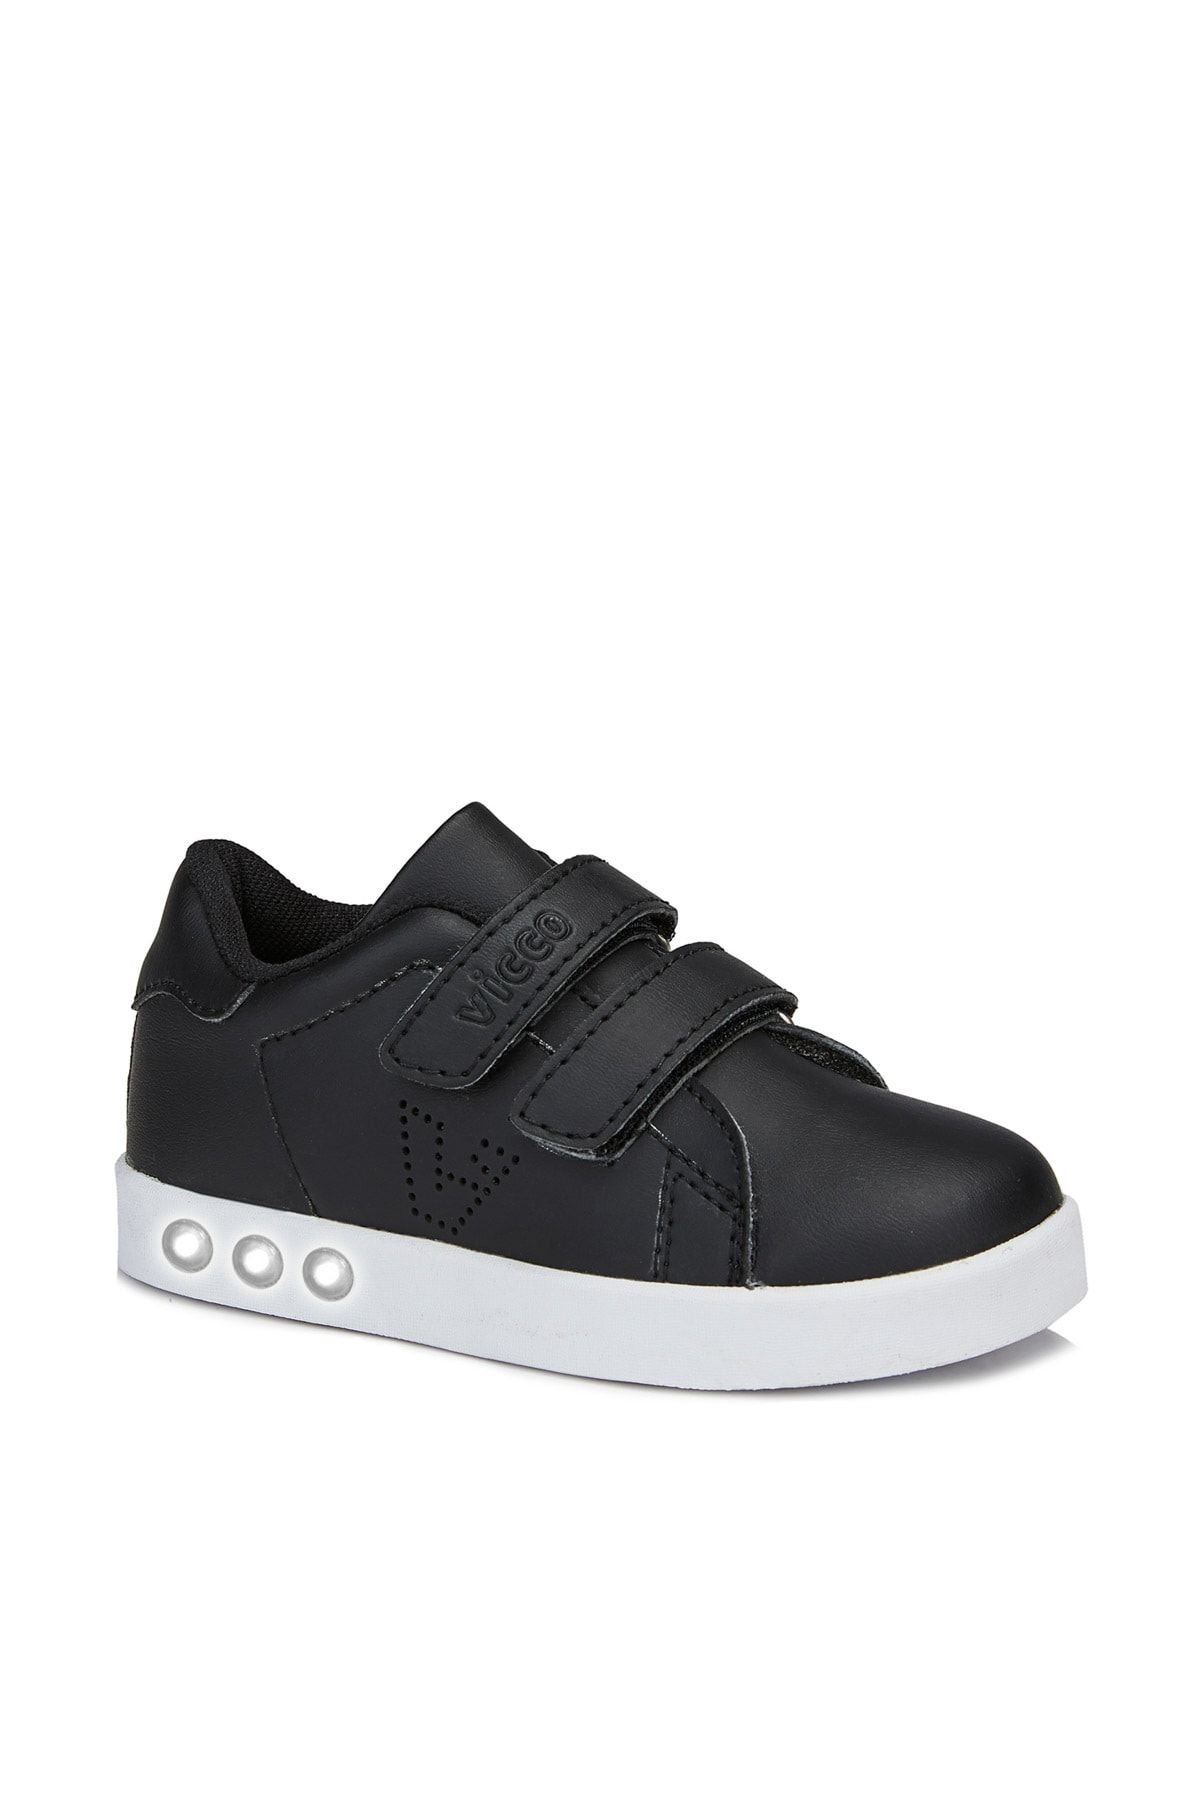 Vicco Oyo Unisex Bebe Siyah/beyaz Spor Ayakkabı